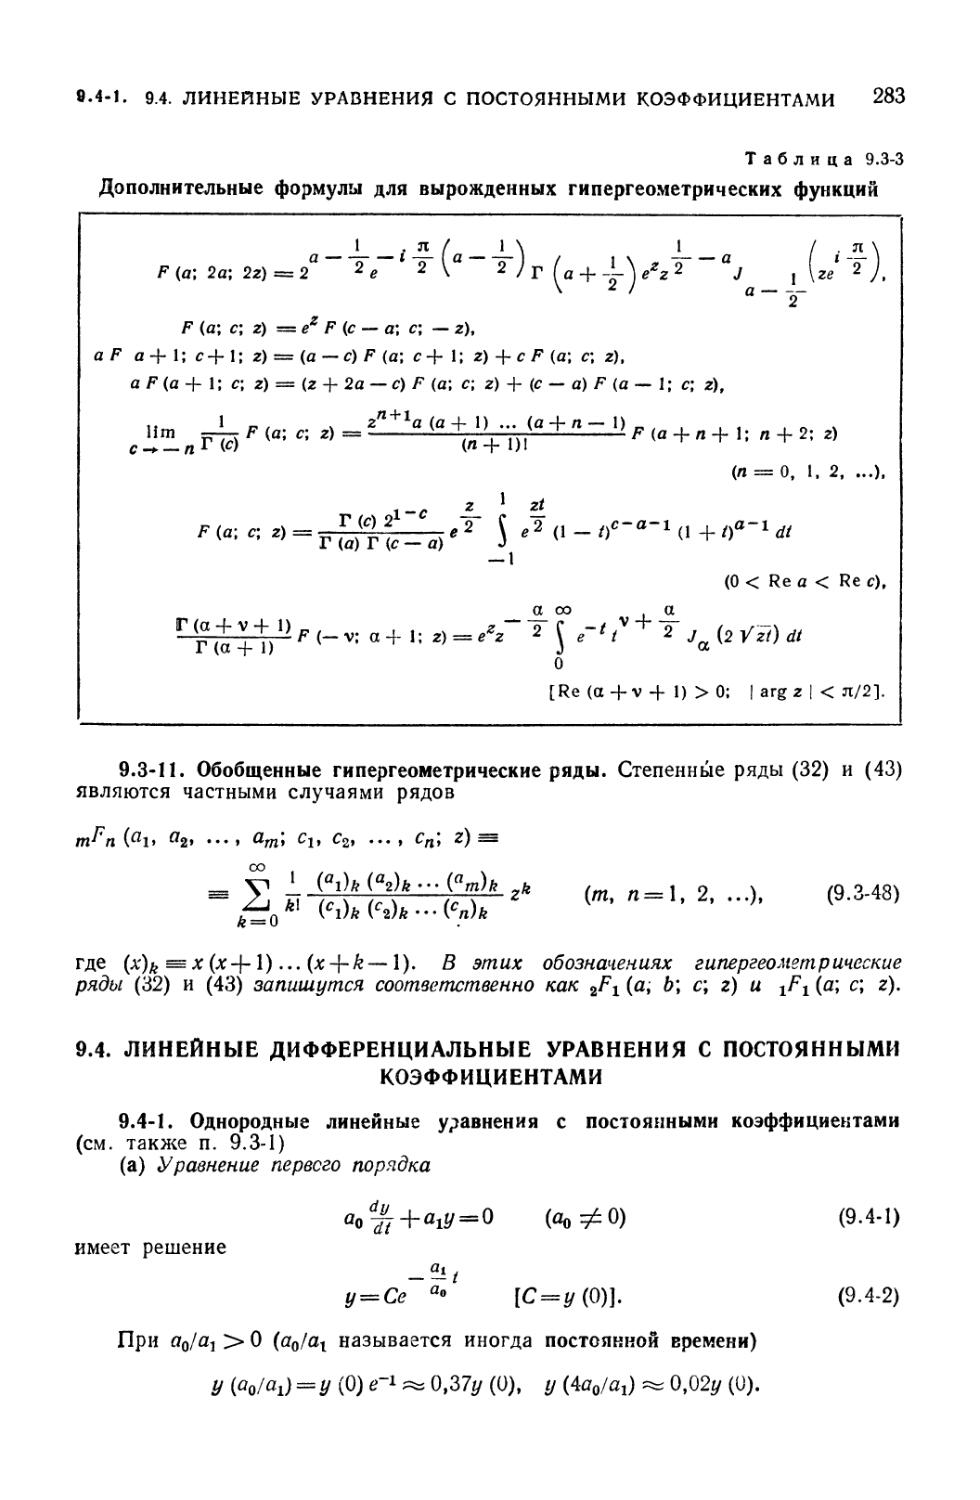 9.4. Линейные дифференциальные уравнения с постоянными коэффициентами